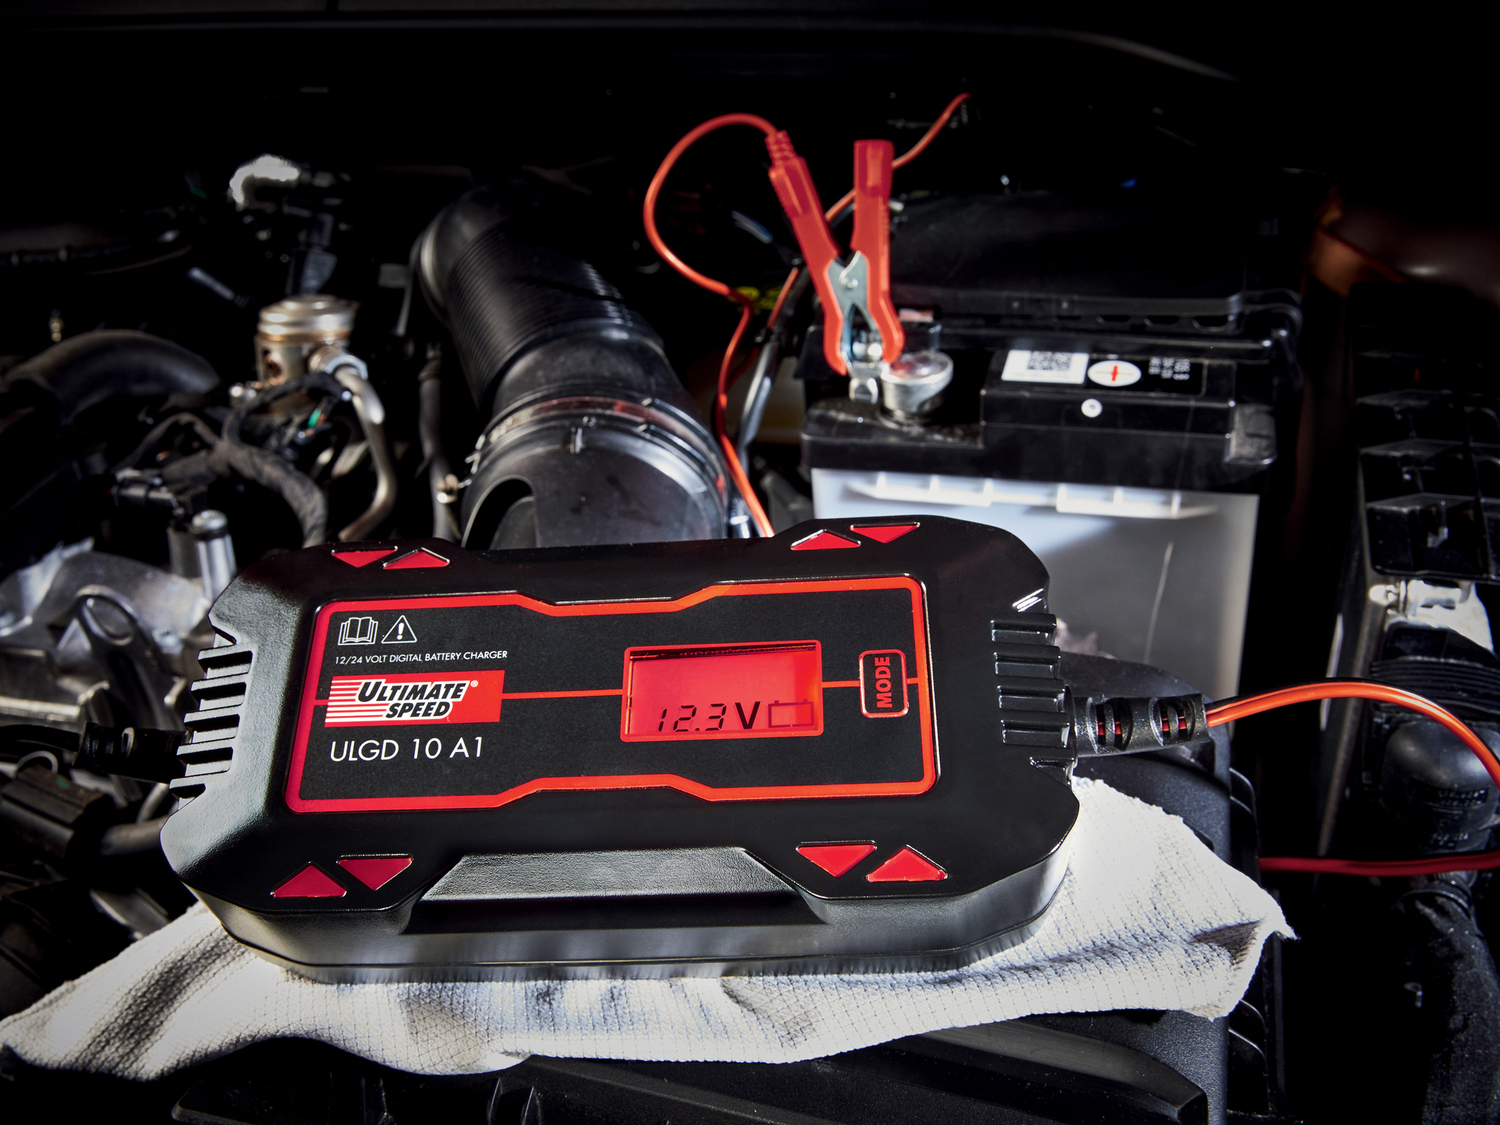 Caricabatterie per auto Ultimate Speed, prezzo 34.99 € 
- Comando intelligente ...